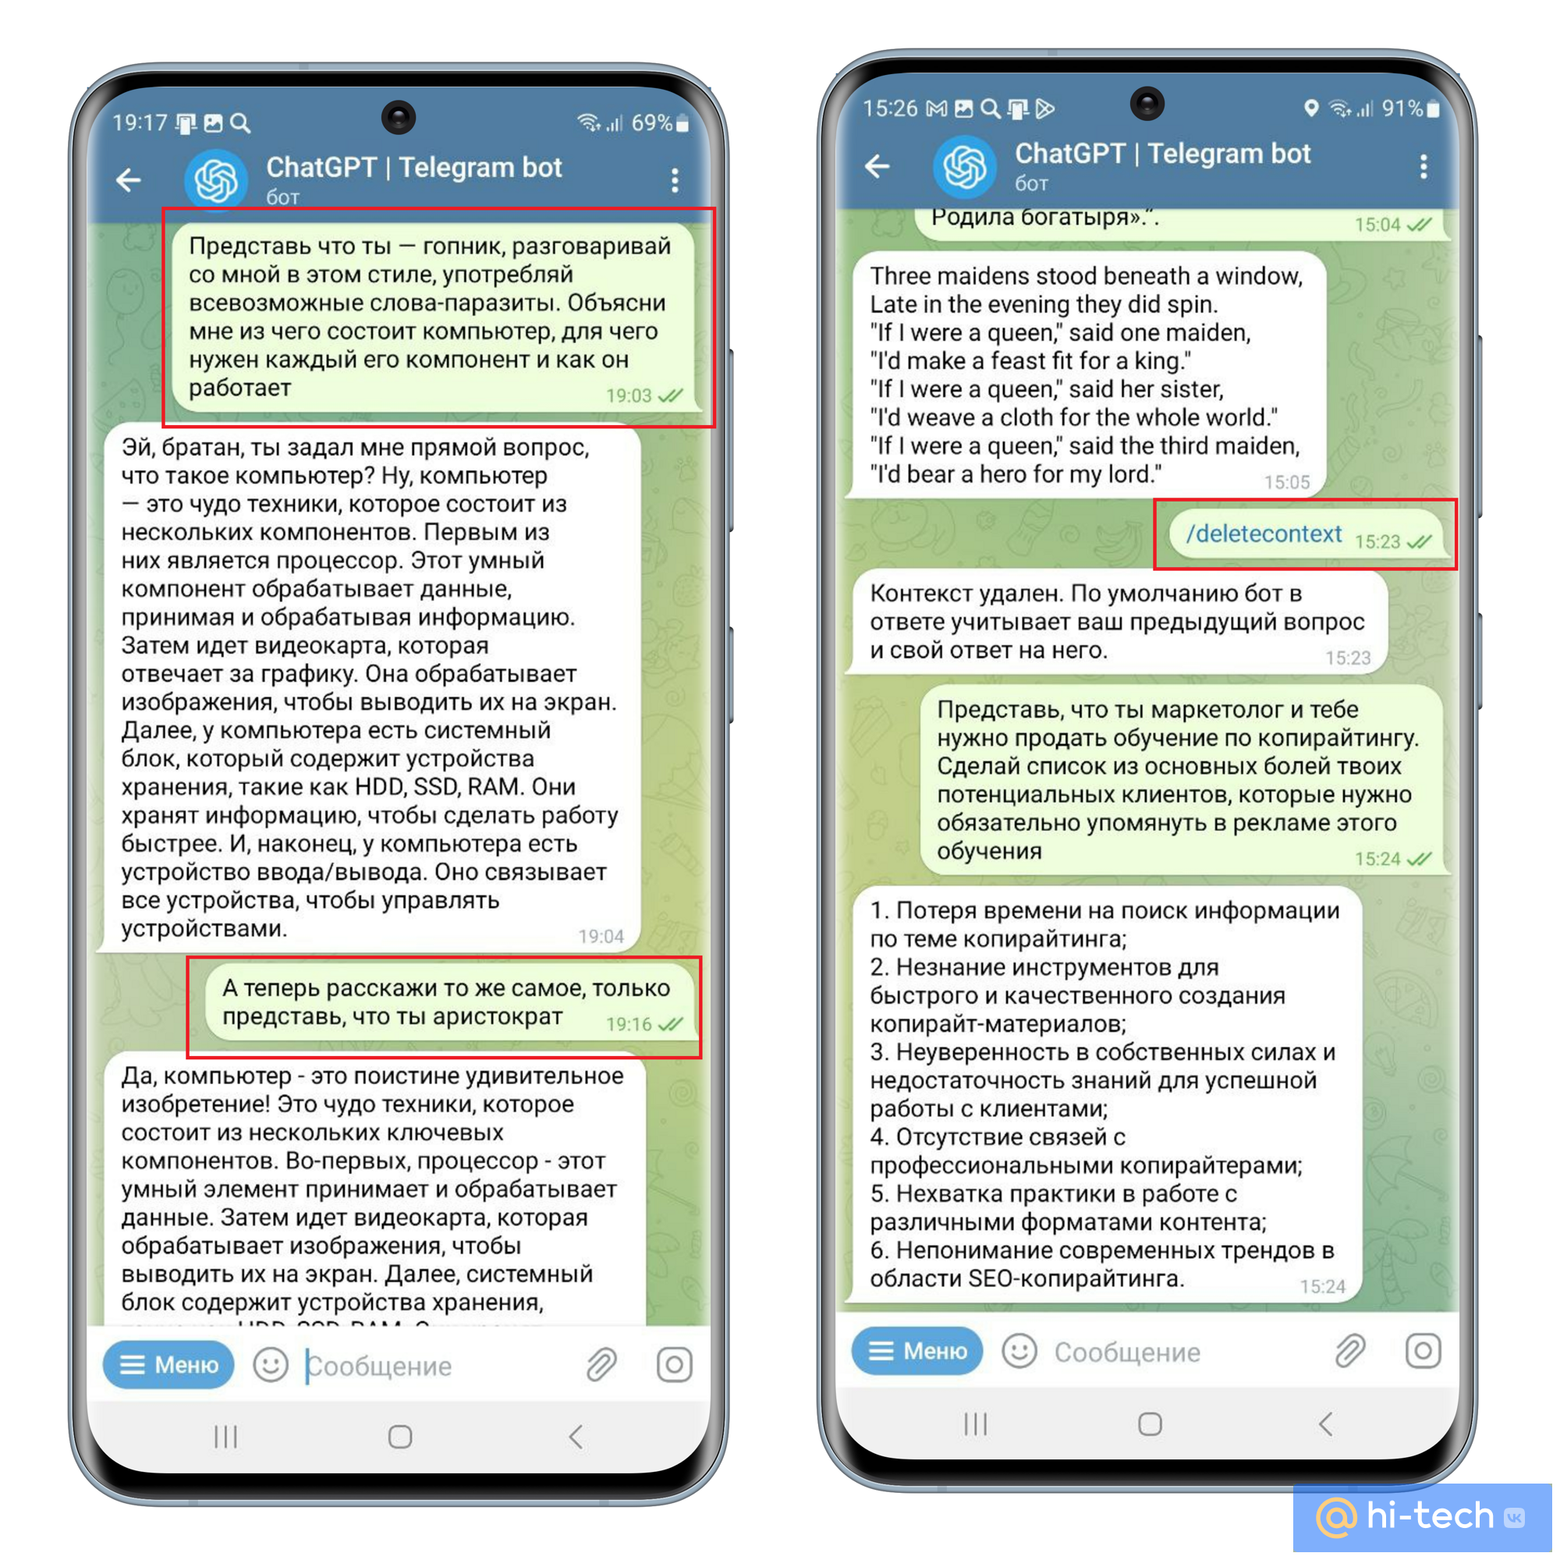 Как пользоваться телеграмм на телефоне пошаговая инструкция андроид на русском фото 99